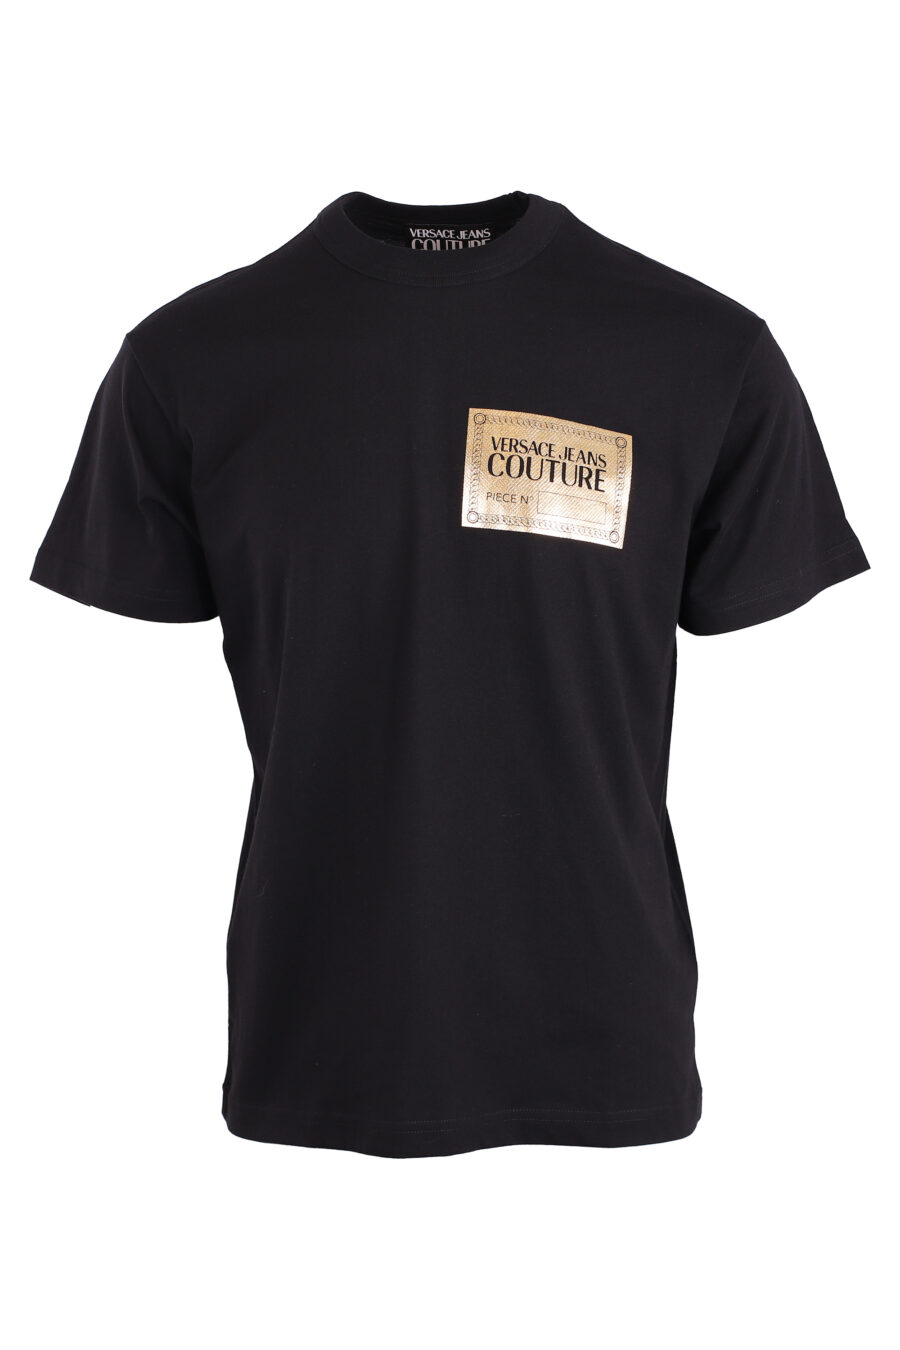 Camiseta negra con logo placa dorada - IMG 8947